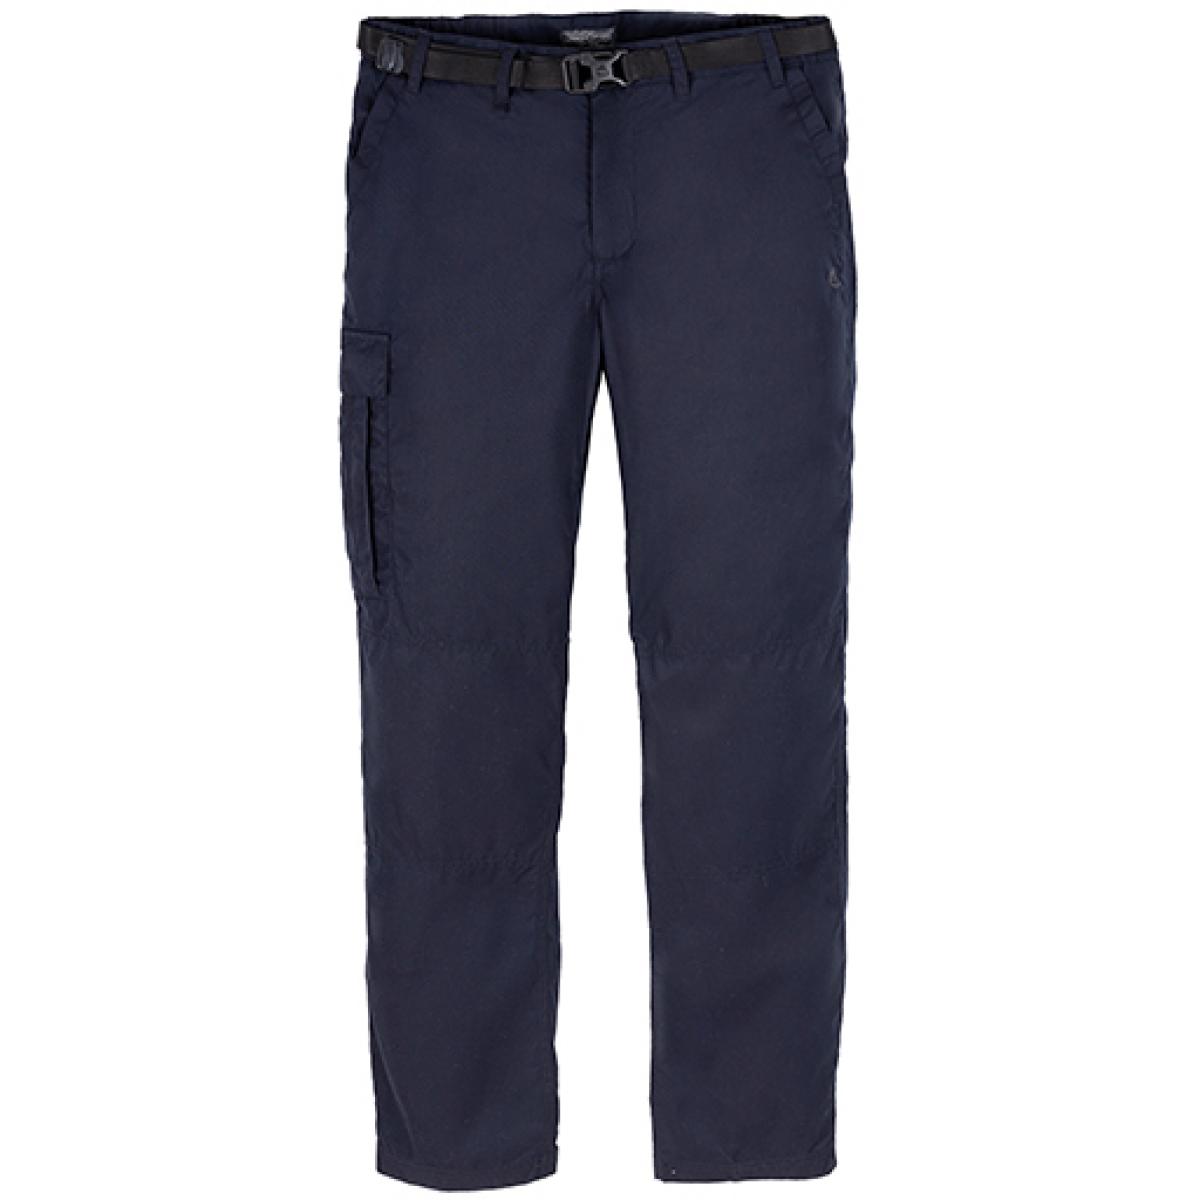 Hersteller: Craghoppers Expert Herstellernummer: CEJ001 Artikelbezeichnung: Expert Kiwi Tailored Trousers - Arbeithose Farbe: Dark Navy